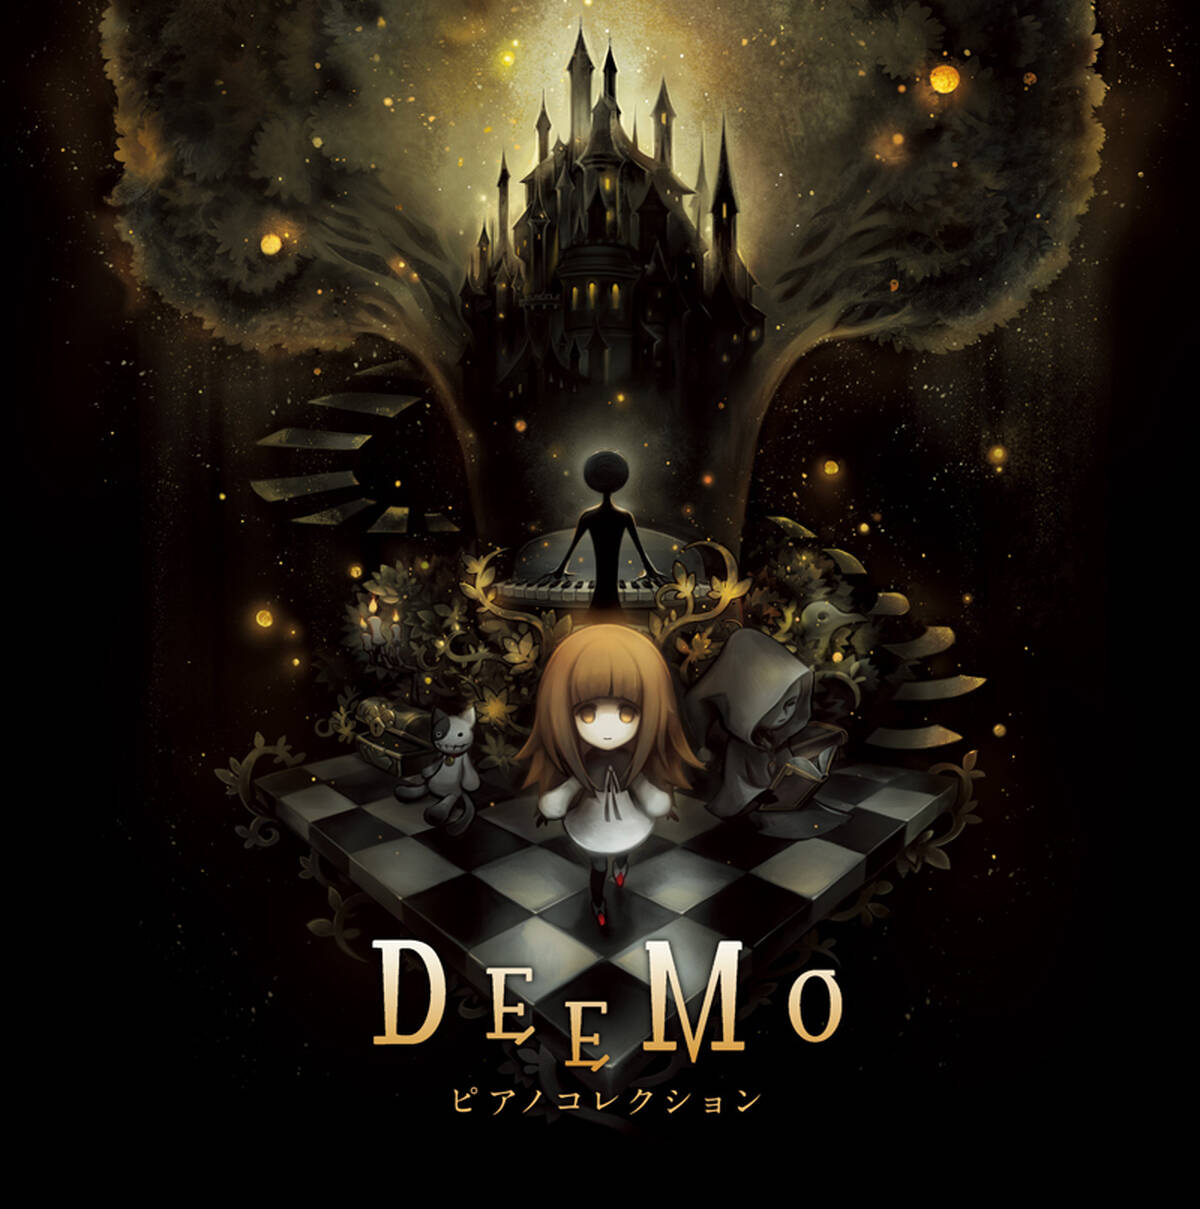 大ヒット音ゲー Deemo の音楽世界をピアノアレンジで構築したcdアルバム Deemo ピアノコレクション が3月27日発売 アキバ総研